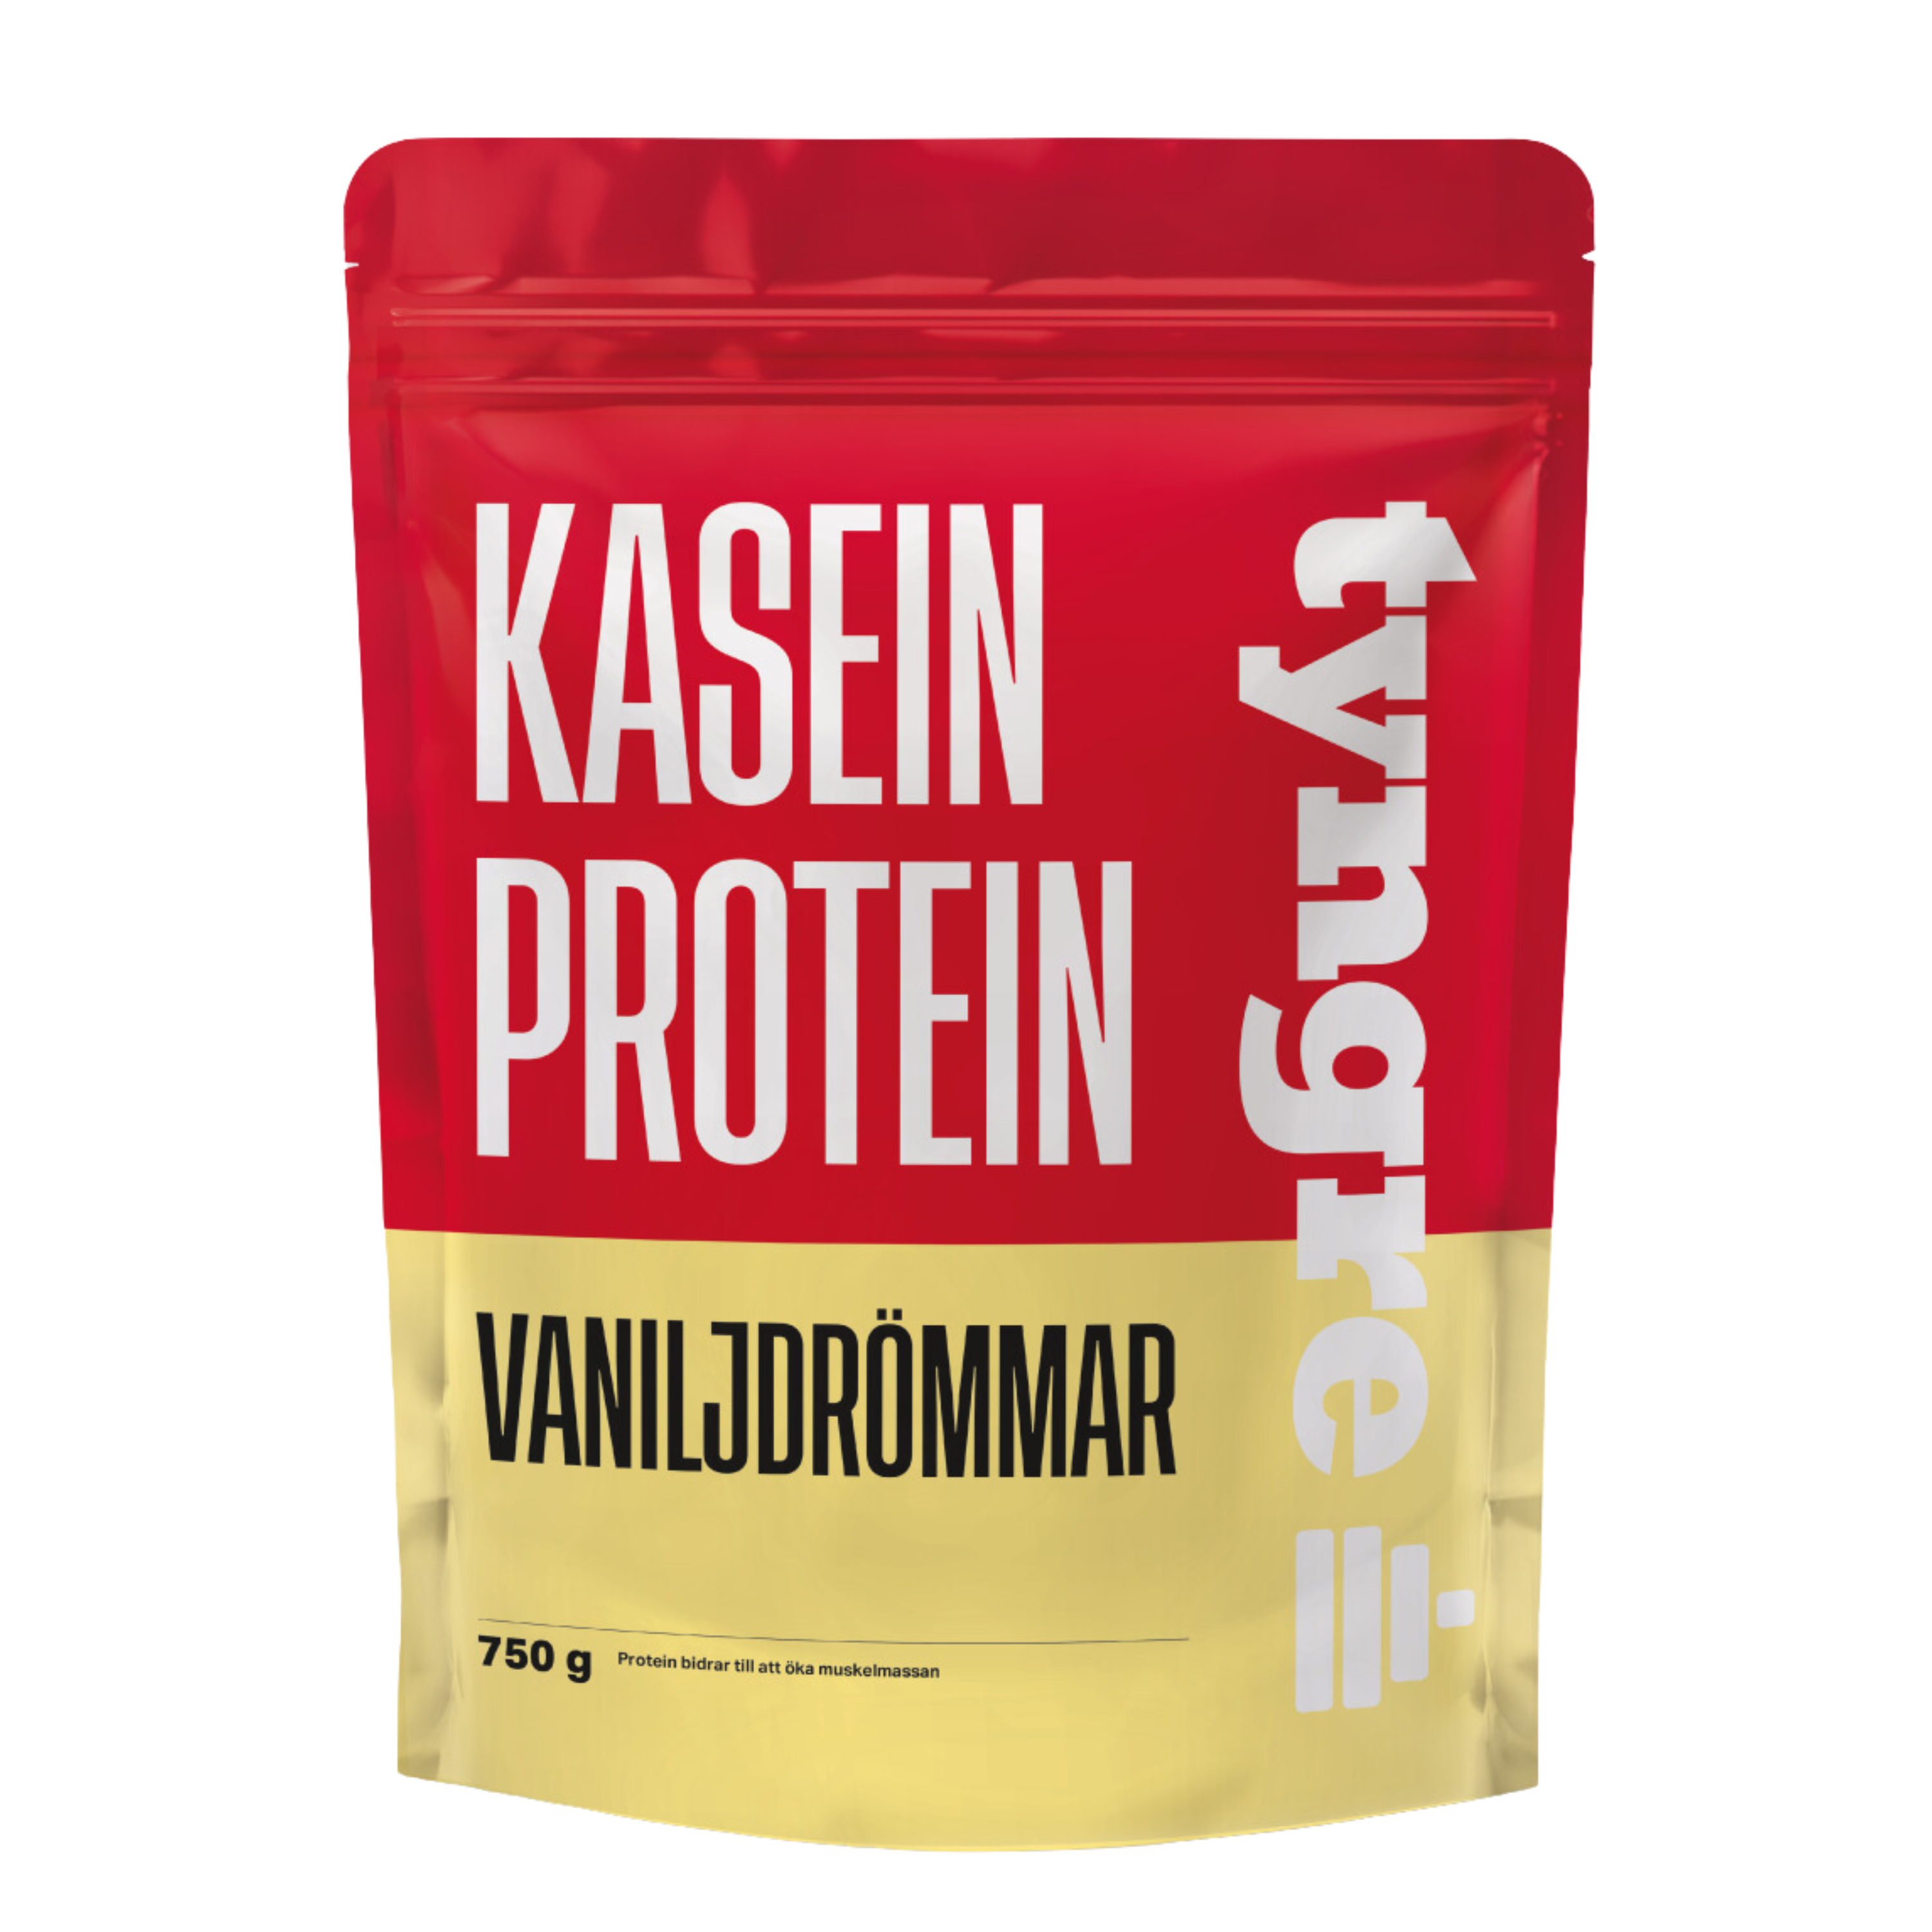 Kaseinprotein Vaniljdrömmar 750g